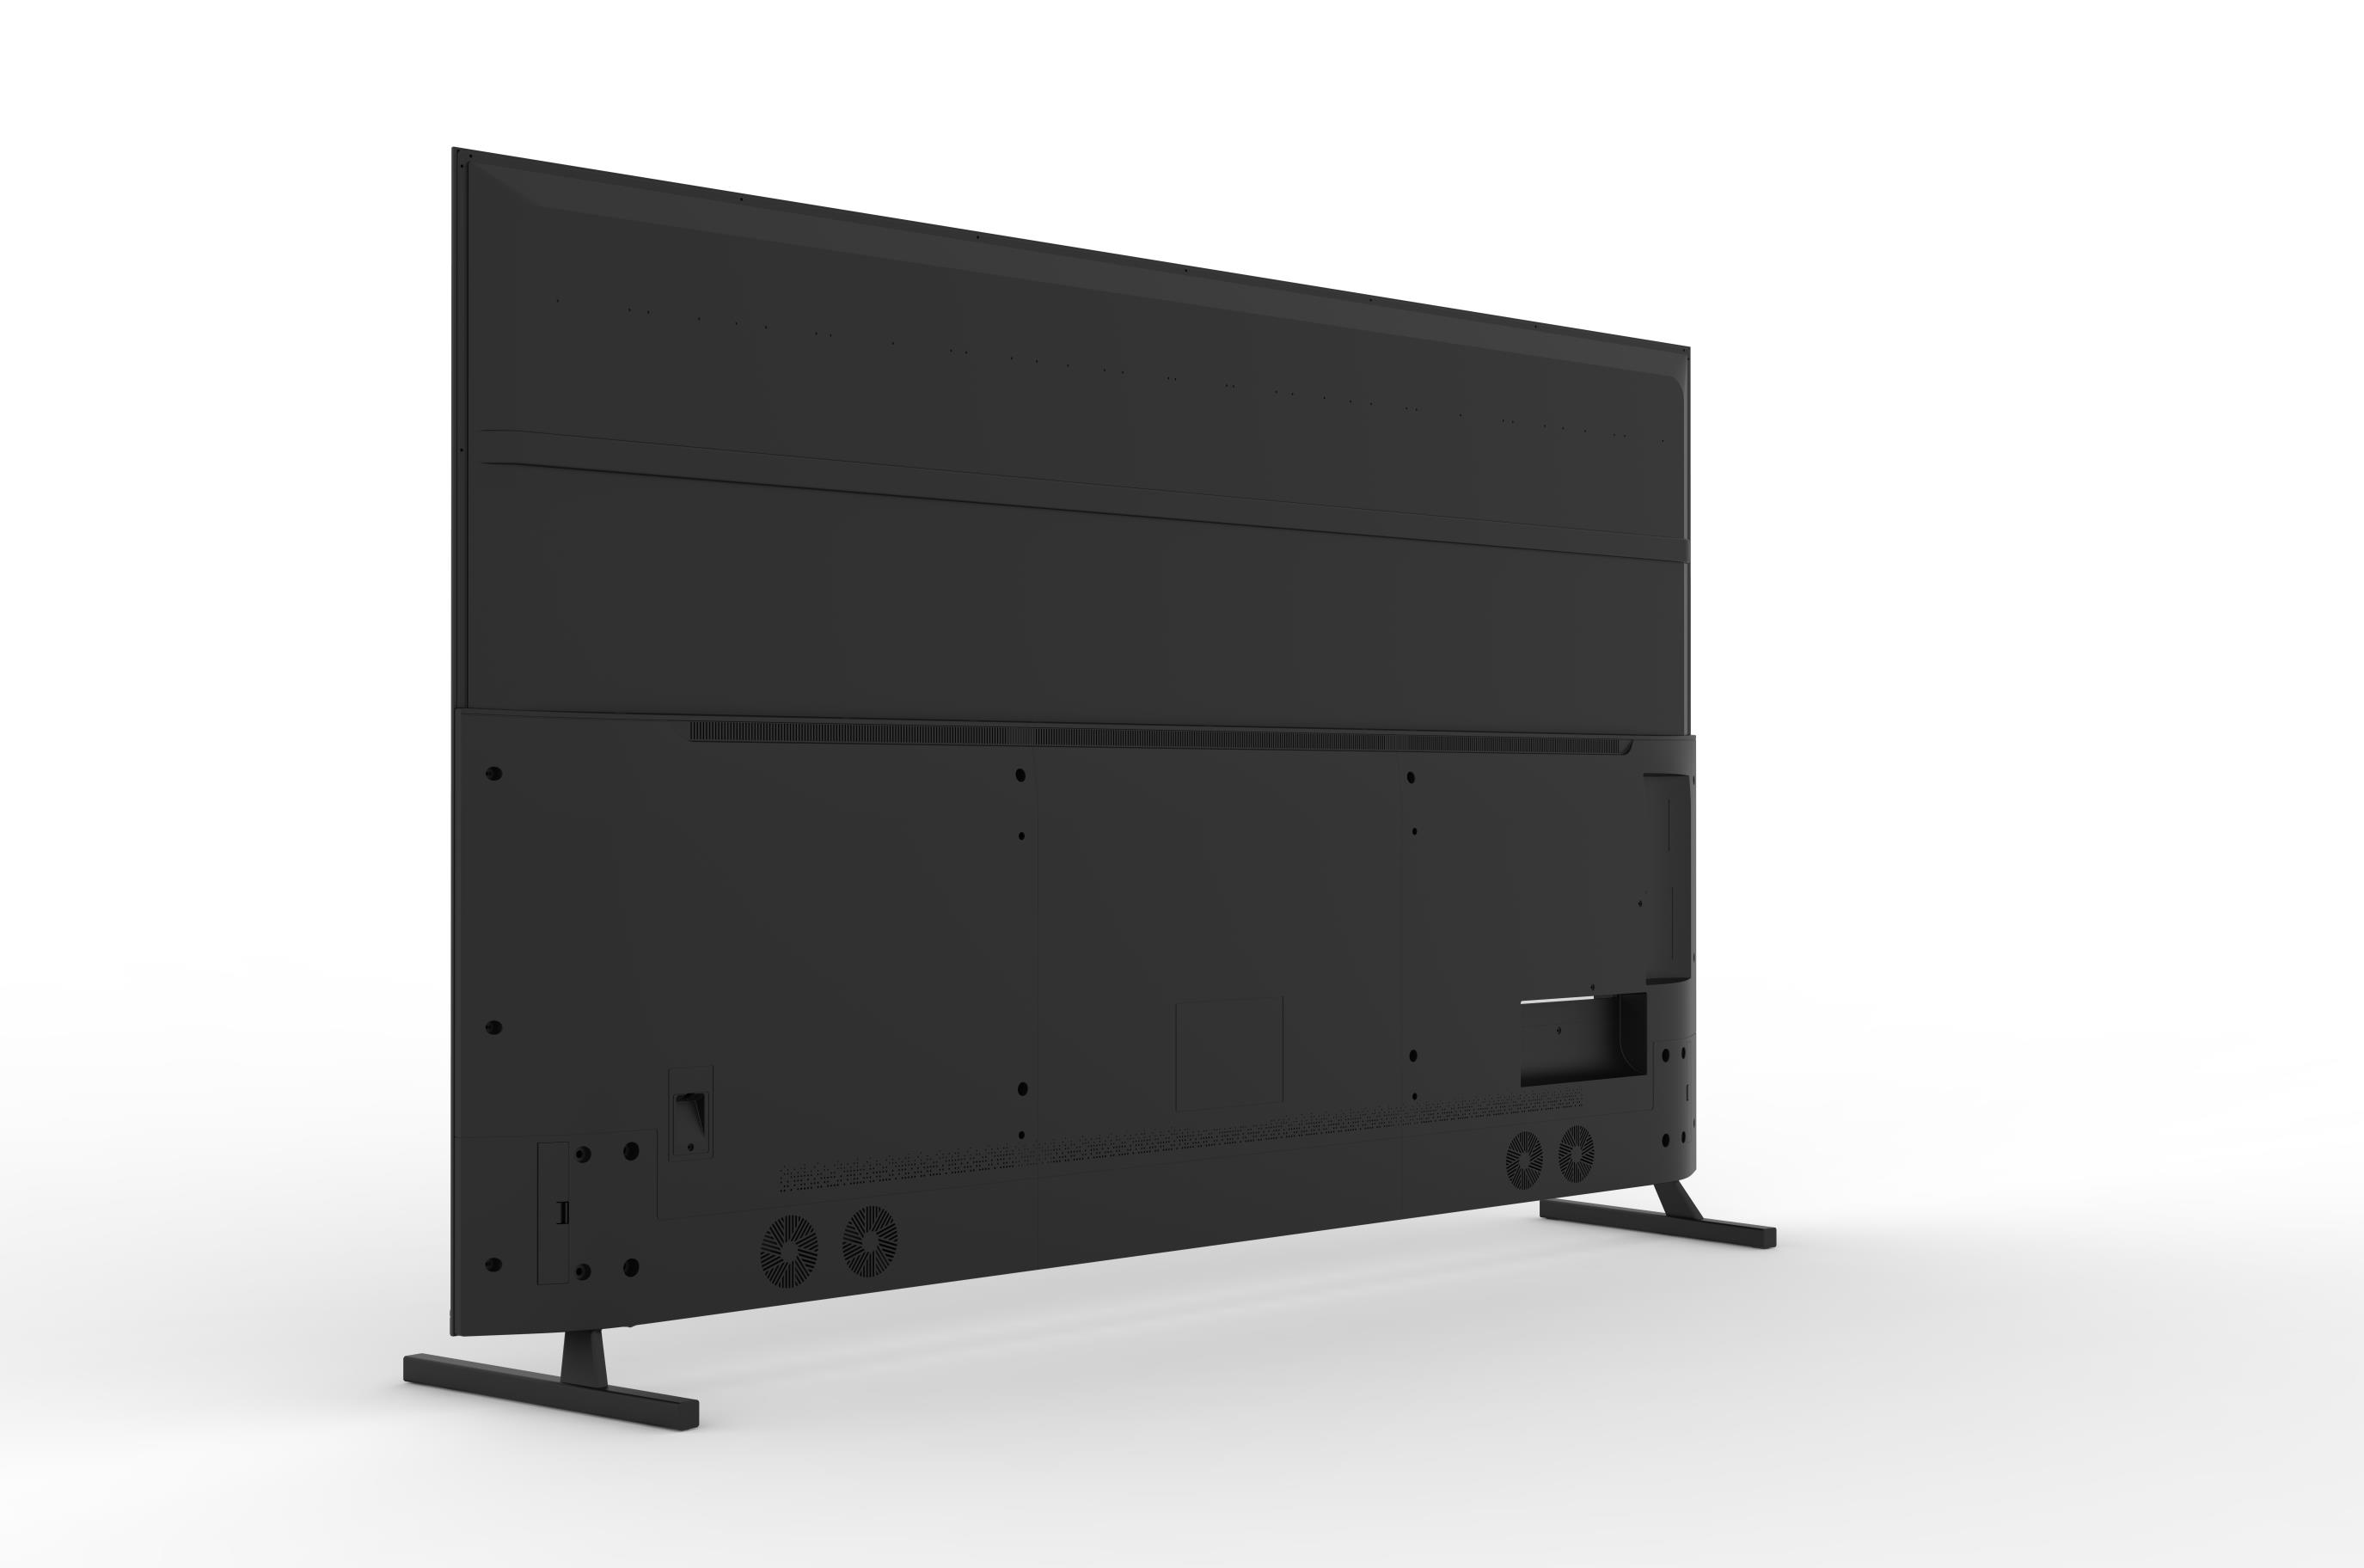 Bonne qualité A + Panneau de grade Fialt Screen Nouveau modèle Grand écran plat LED TV intelligent